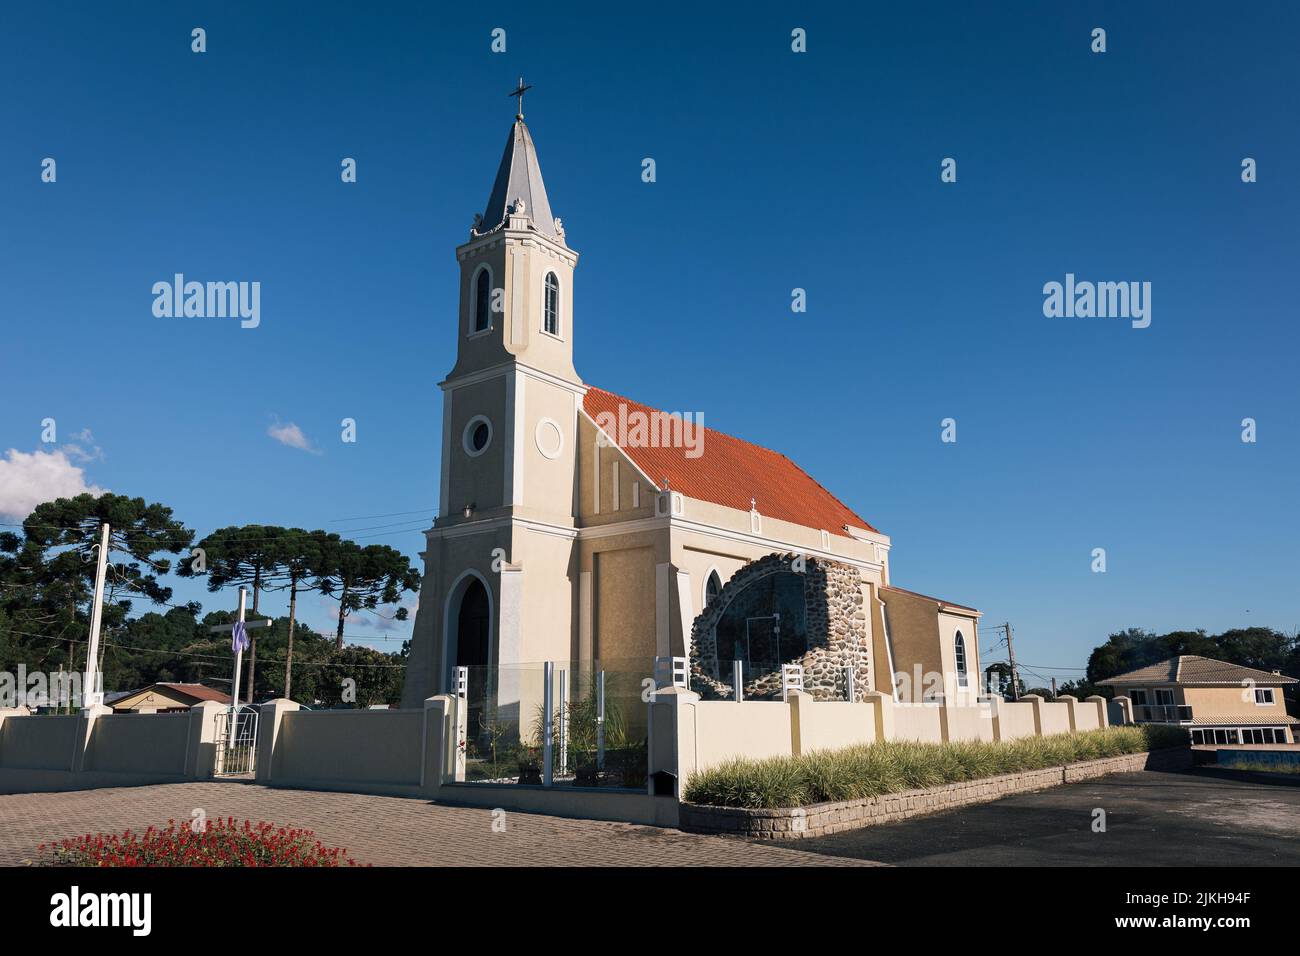 Una vista panoramica di una chiesa cattolica contro un cielo blu senza nuvole Foto Stock